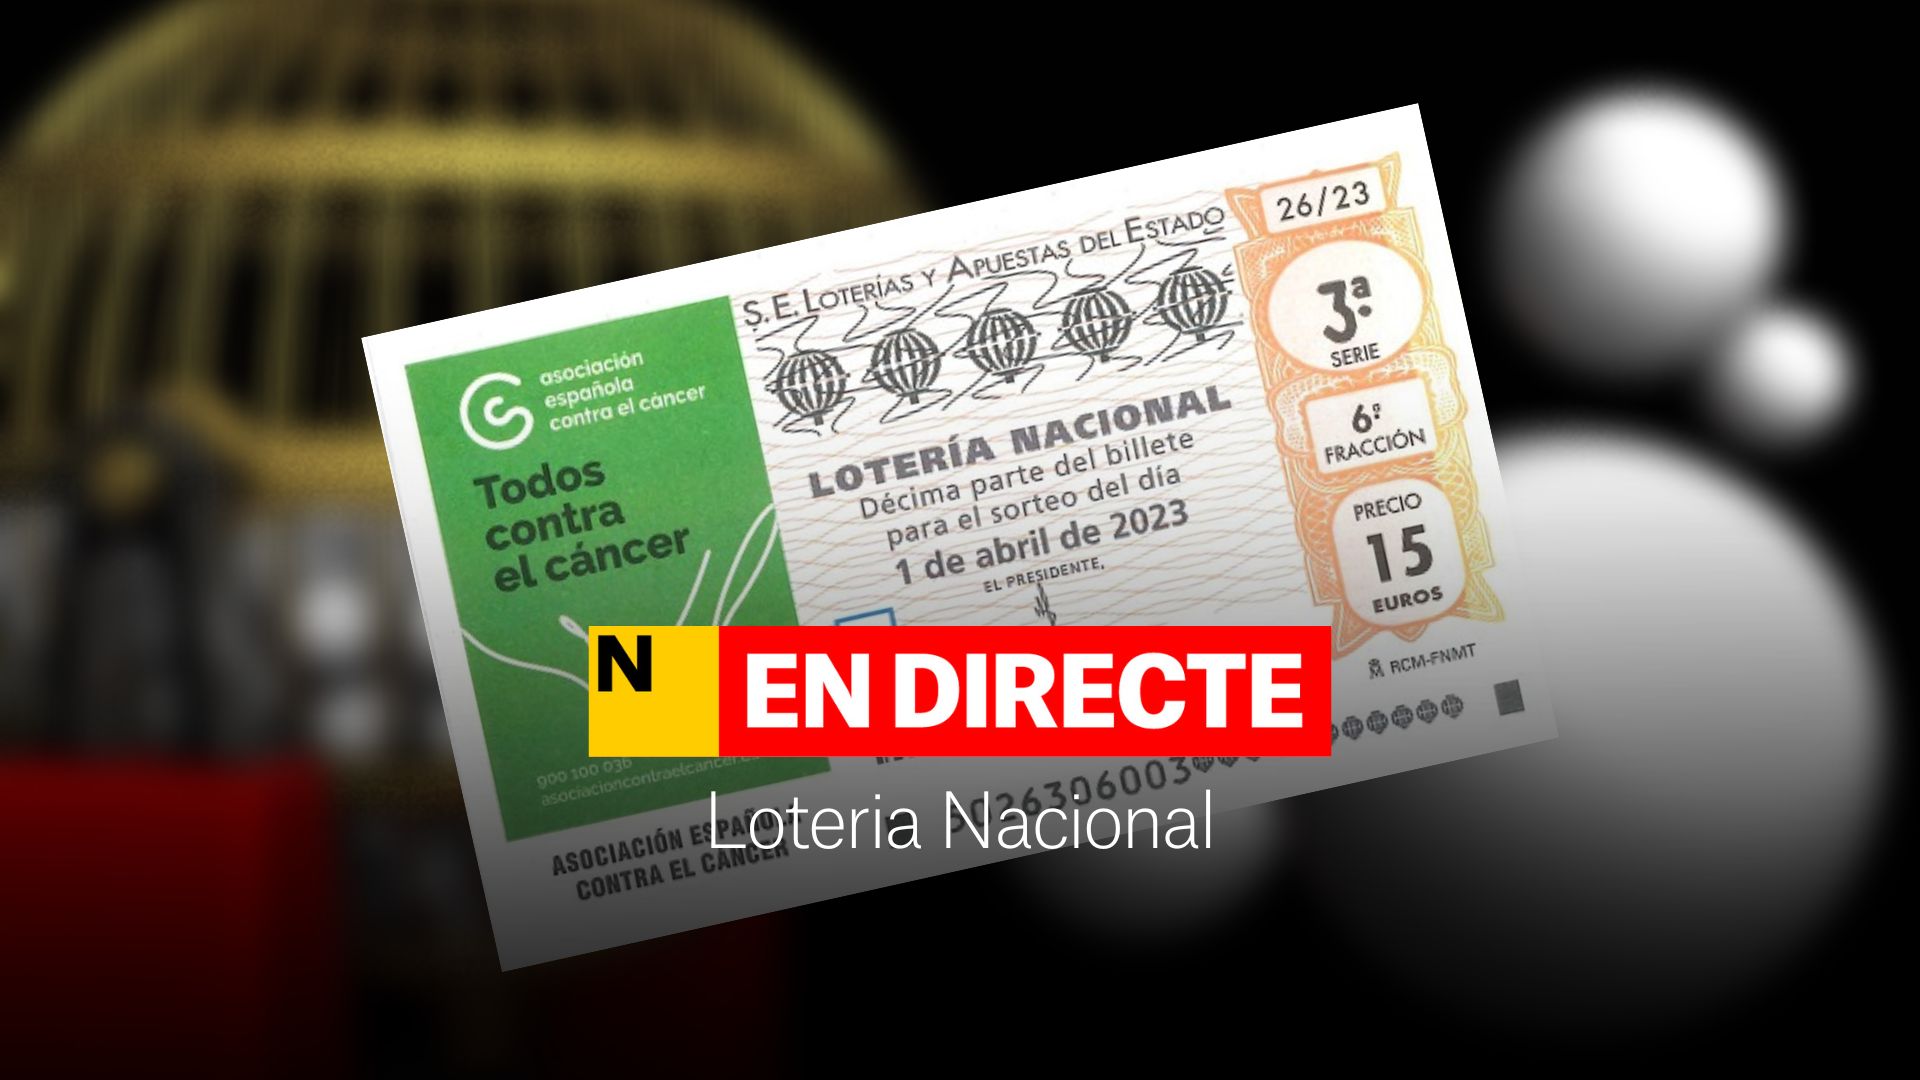 Loteria Nacional avui, DIRECTE | Comprovar resultats i premis del sorteig de dissabte 1 d'abril